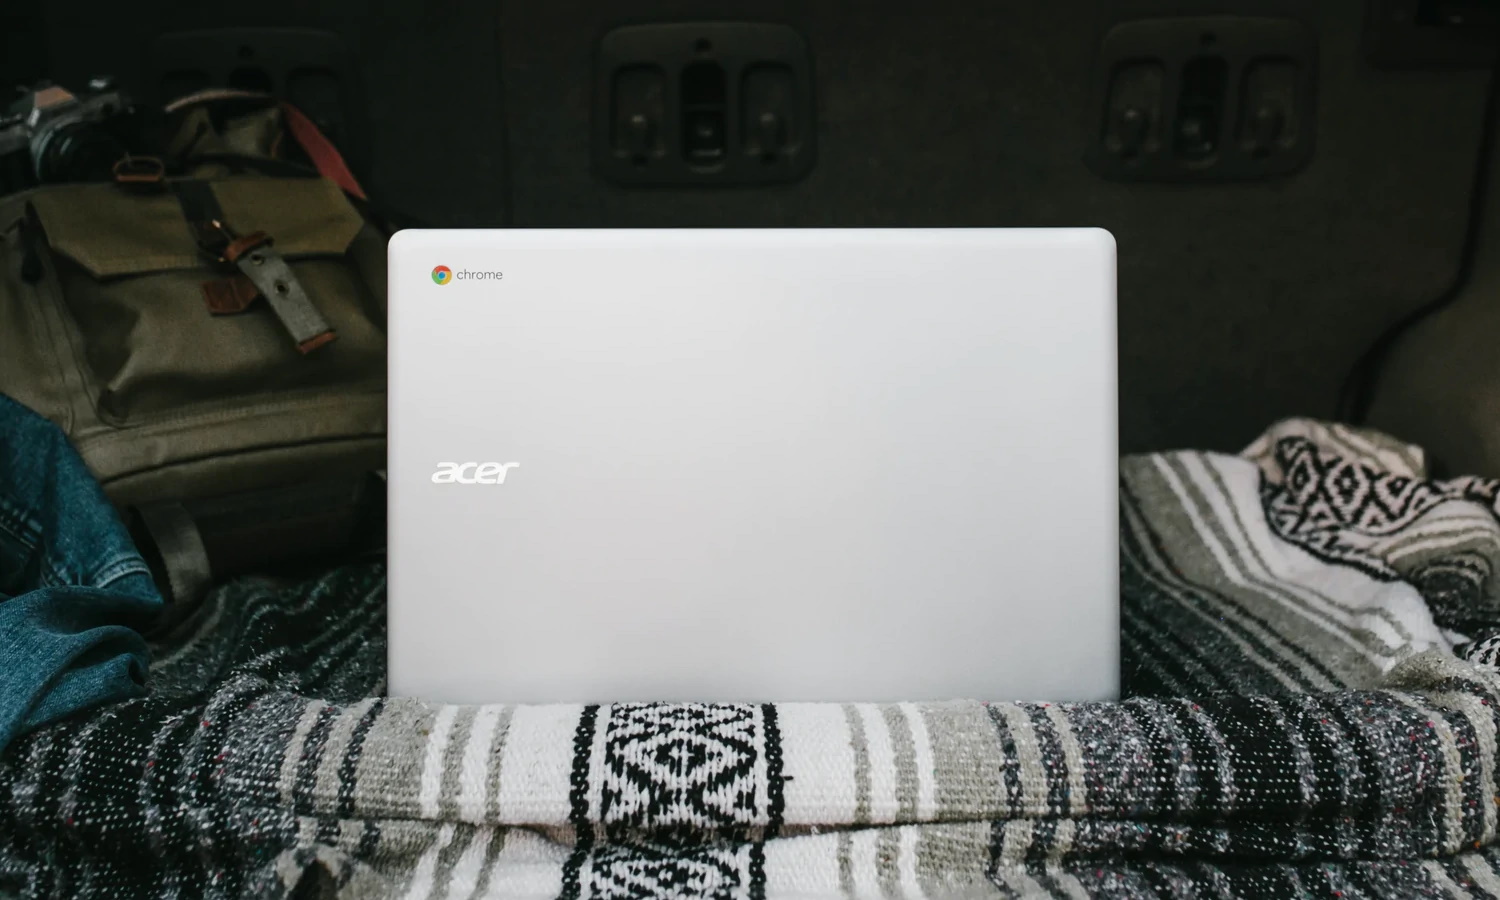 Acer xác nhận bị tấn công lần thứ hai trong năm nay